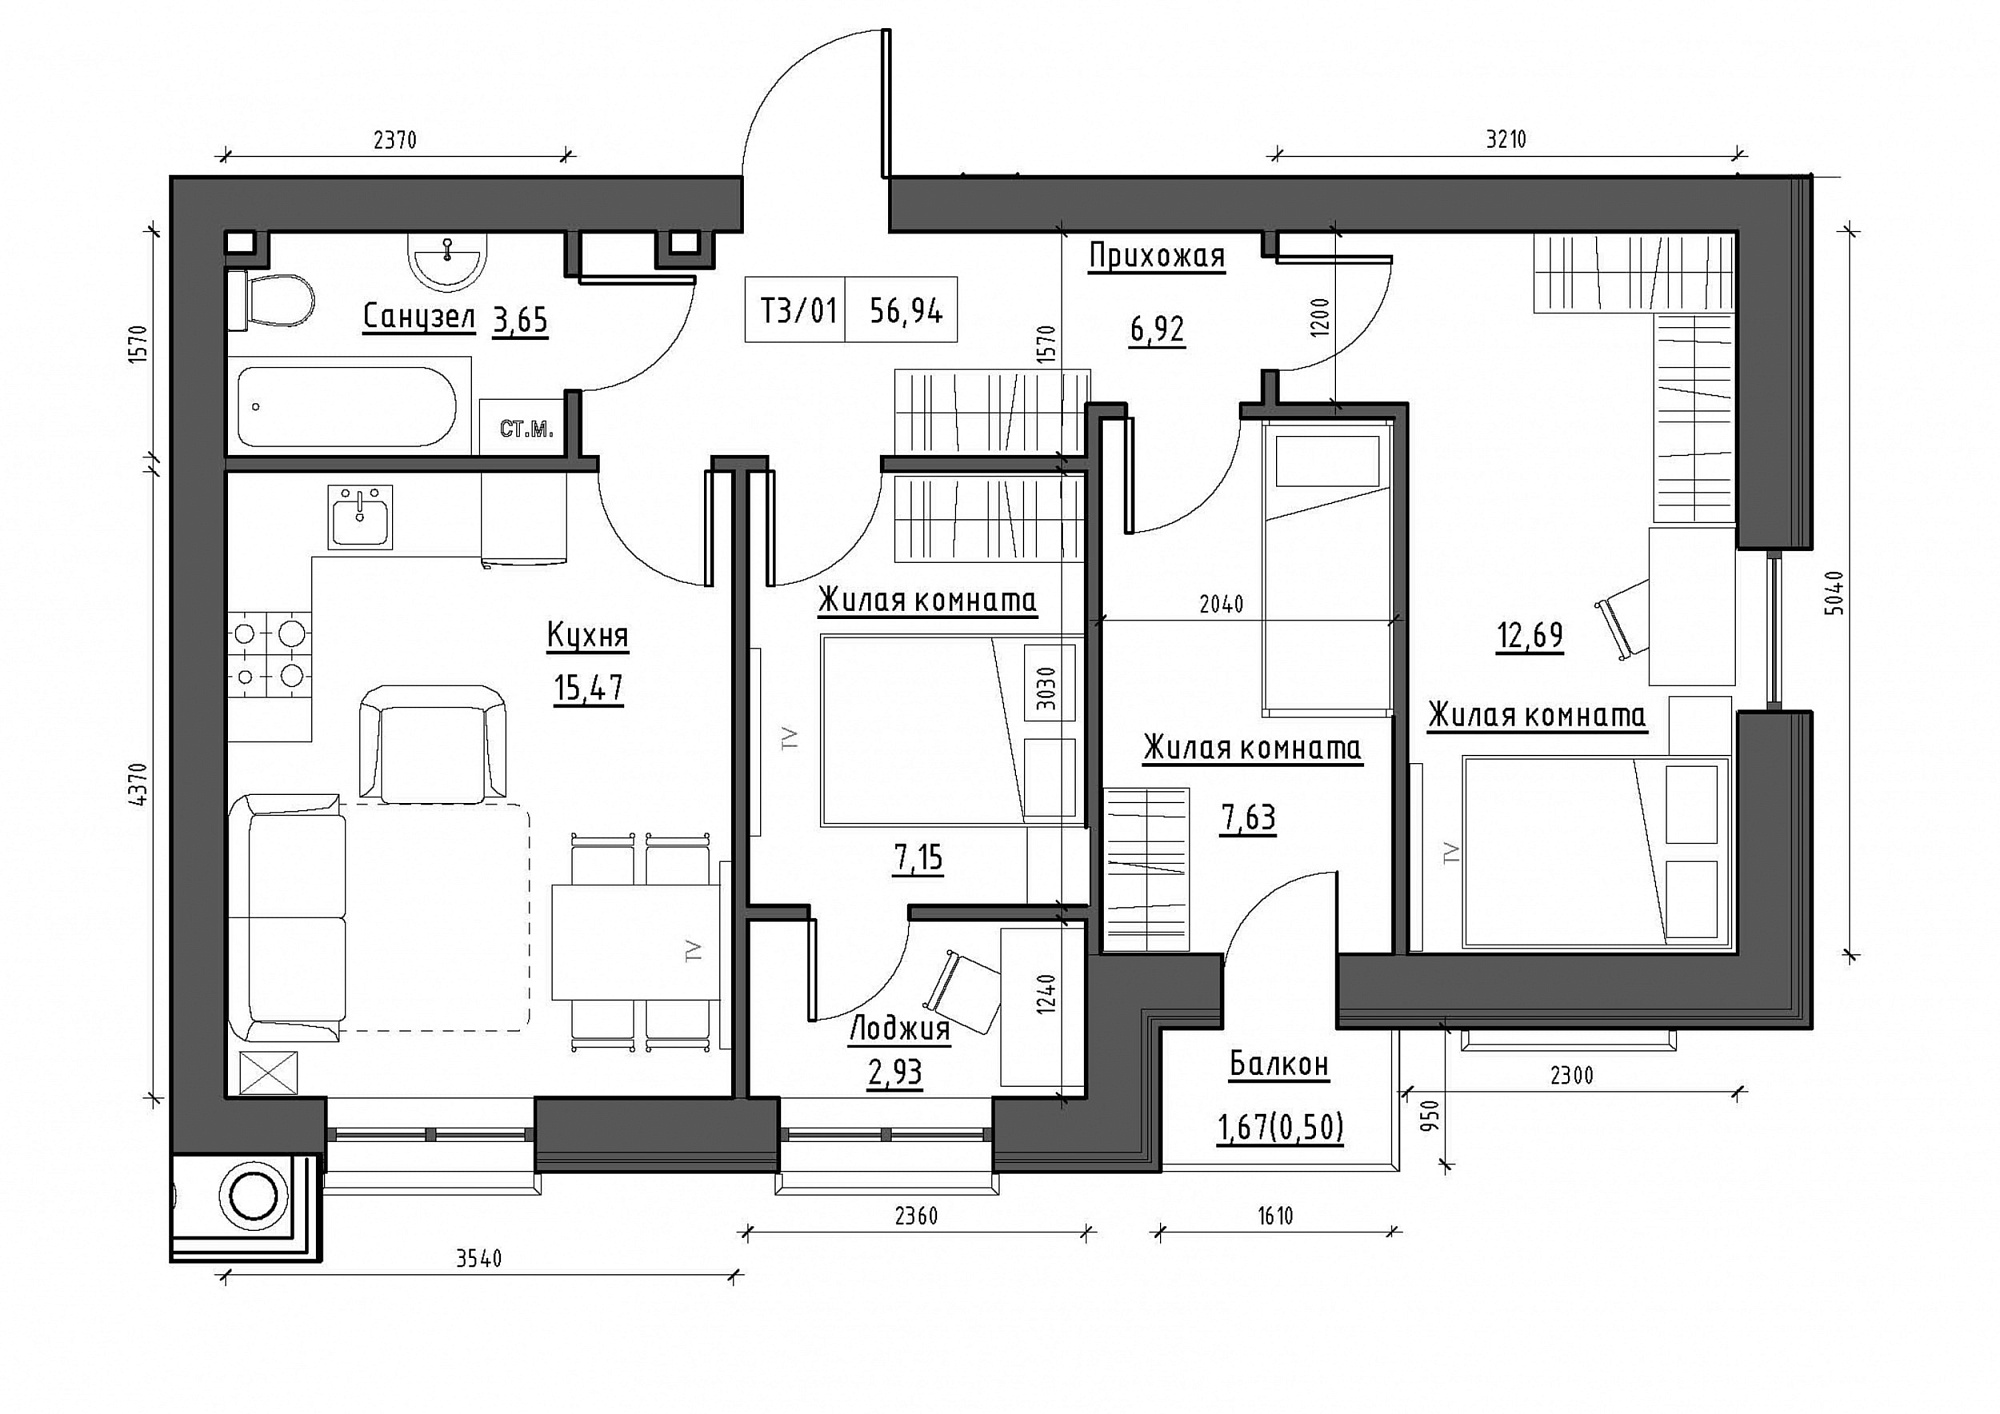 Планування 3-к квартира площею 56.94м2, KS-011-04/0008.